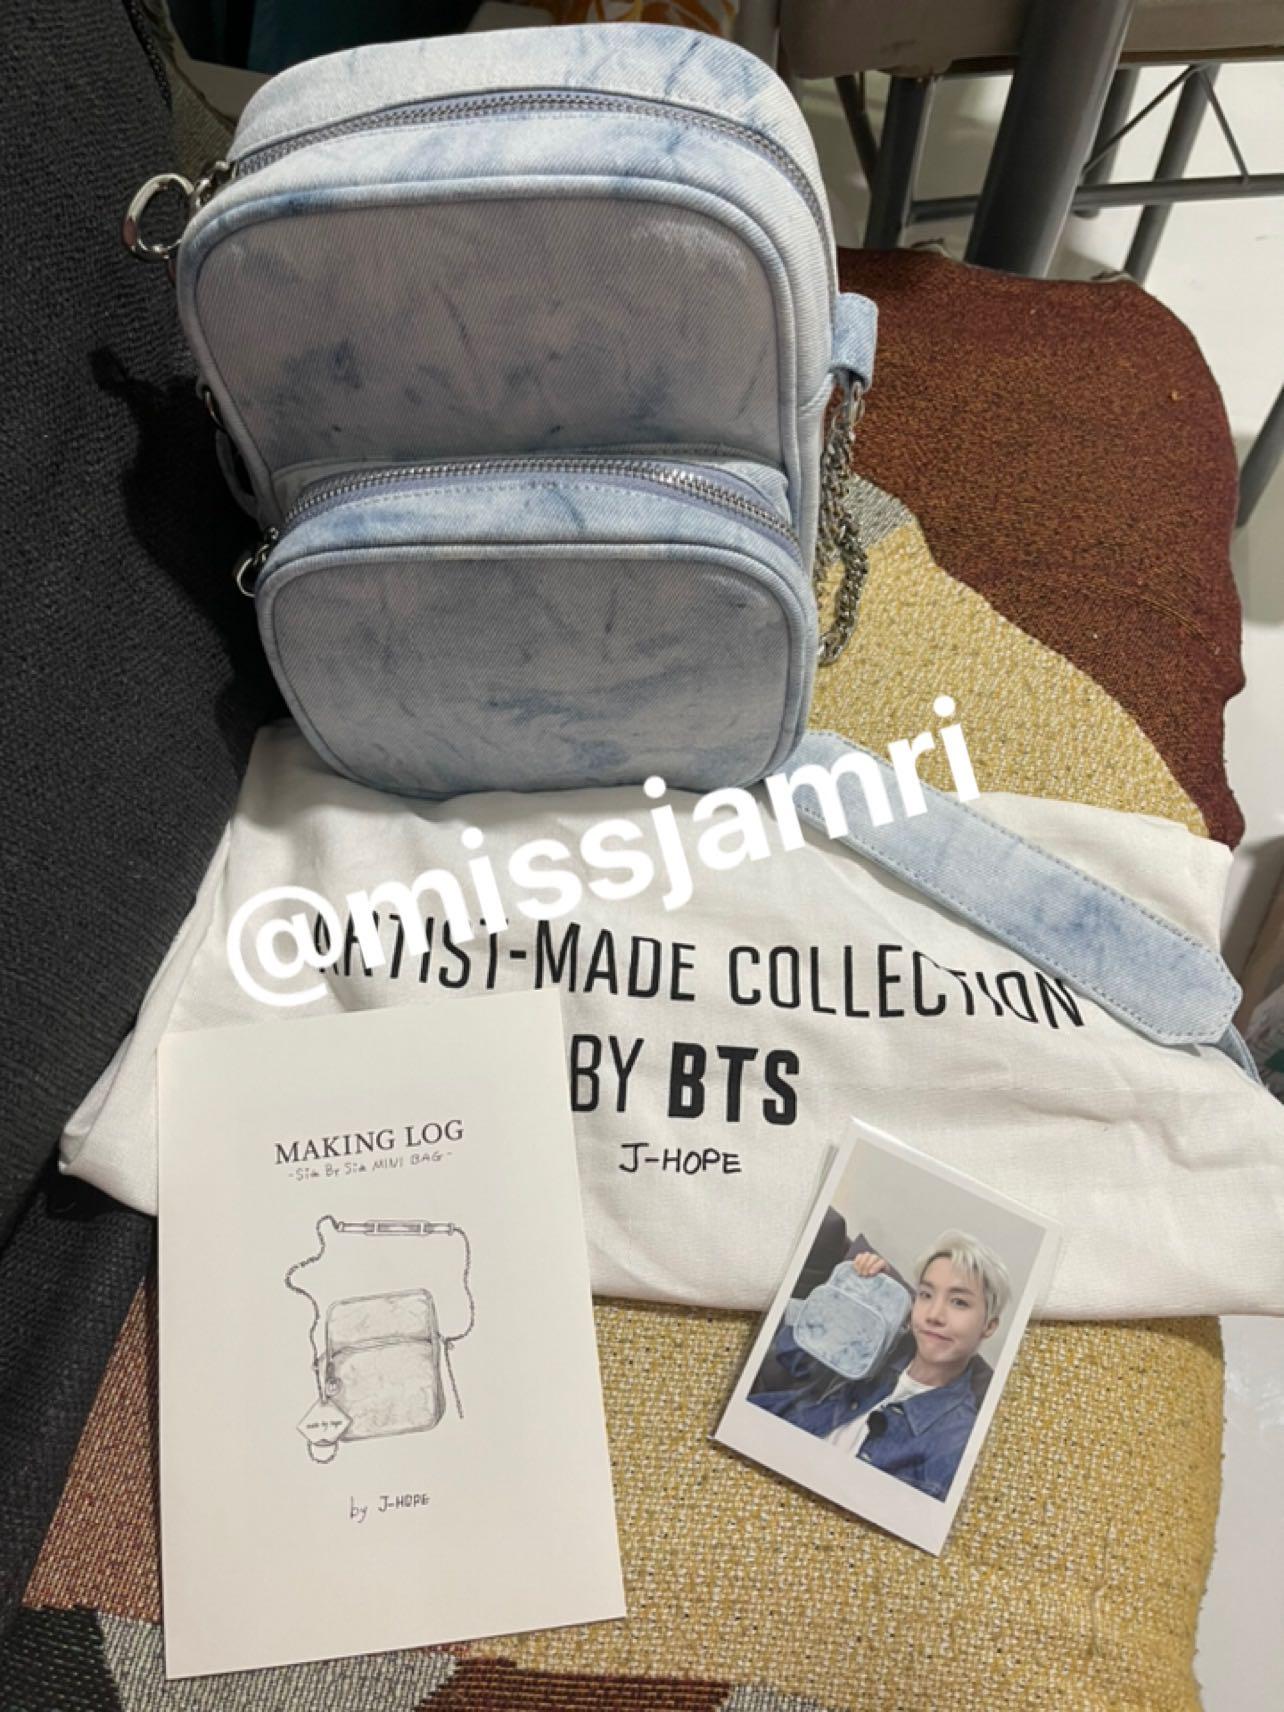 BTS Artist Made Collection J-HOPE SIDE BY SIDE MINI BAG Photo Card denim bag